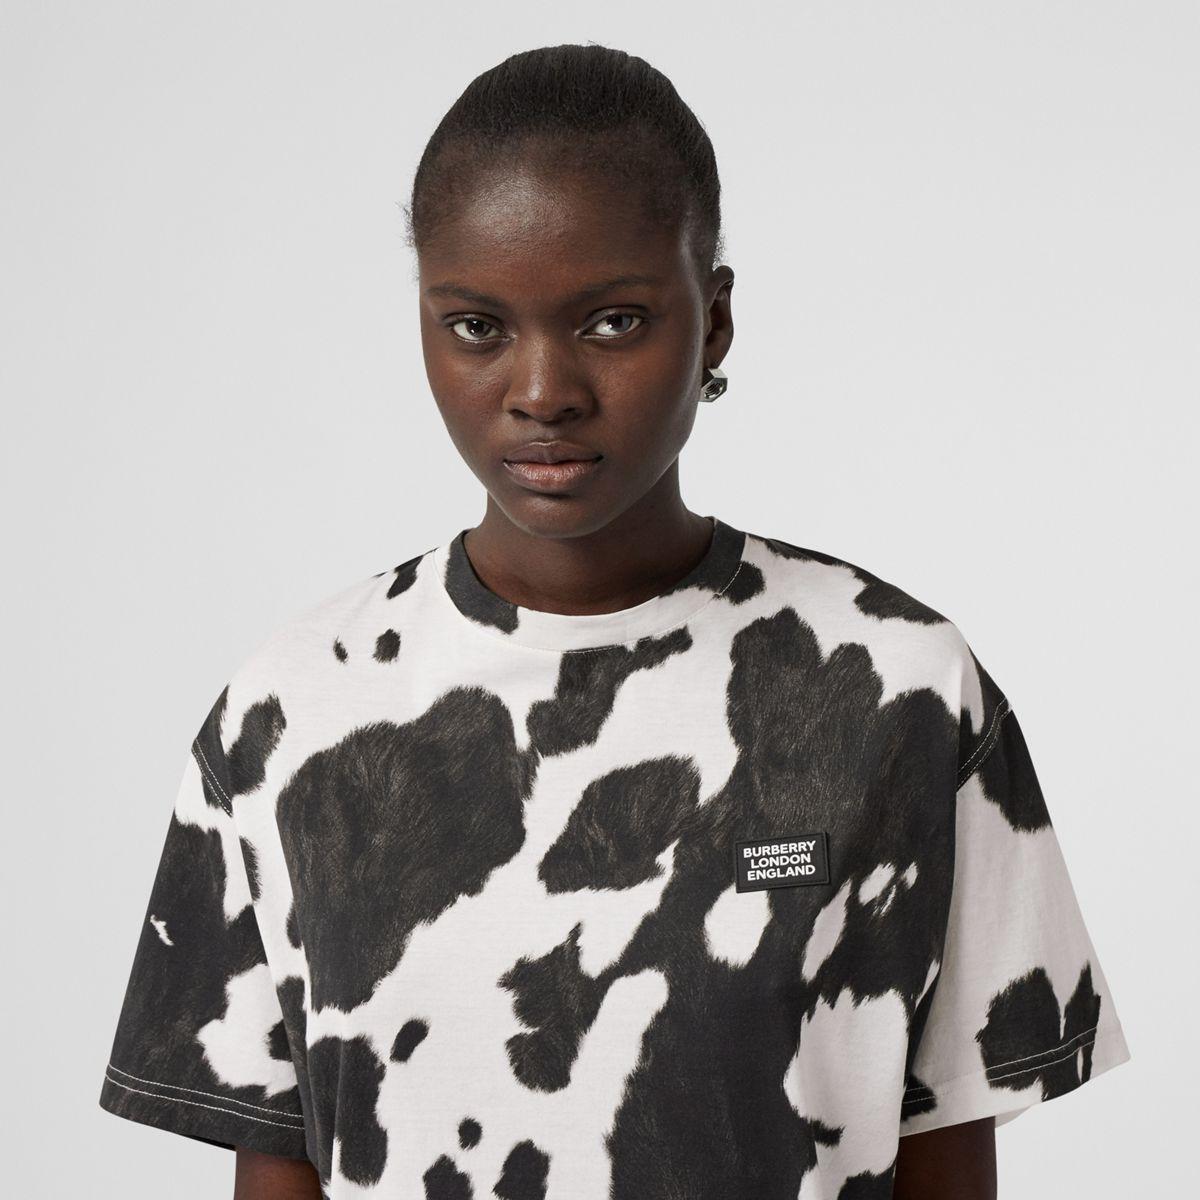 burberry cow shirt